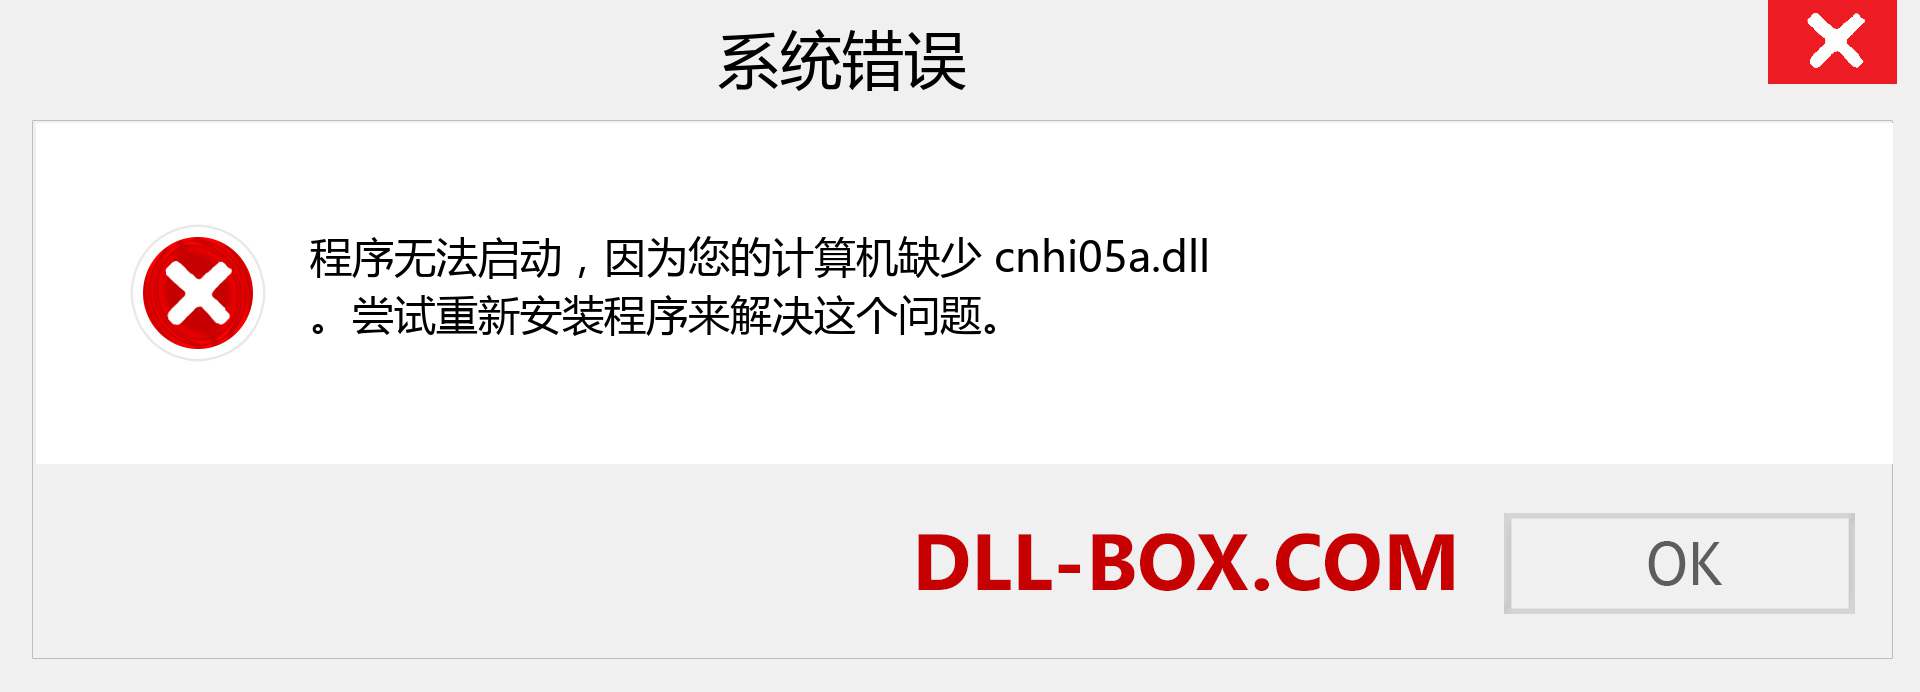 cnhi05a.dll 文件丢失？。 适用于 Windows 7、8、10 的下载 - 修复 Windows、照片、图像上的 cnhi05a dll 丢失错误